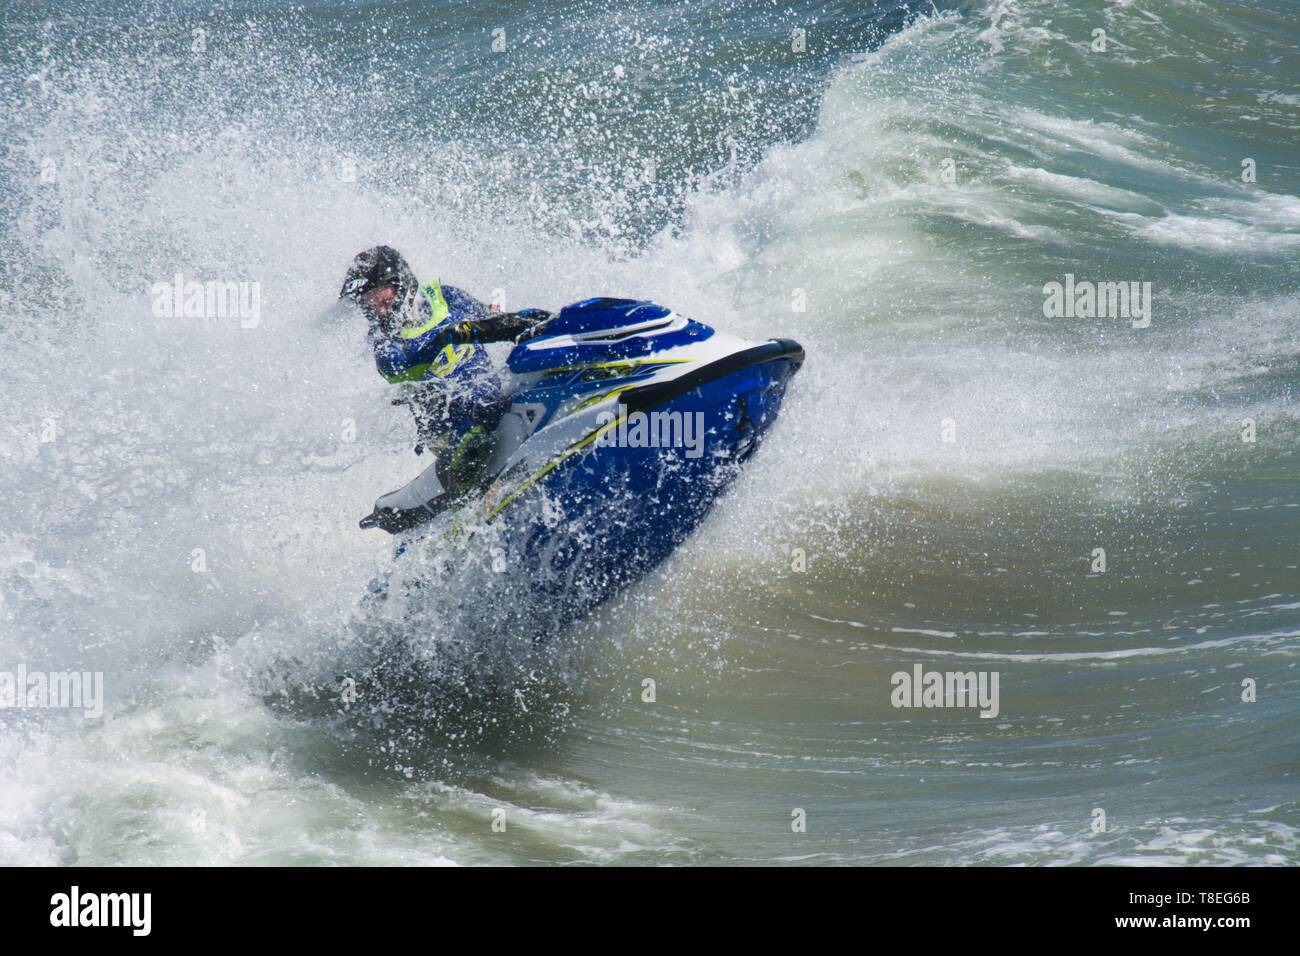 Huntington Beach, Kalifornien / USA - 7. April 2019: Jetskifahrer springt auf eine Meereswelle, wobei das Wasser beim Rennen dramatisch spritzt. Stockfoto